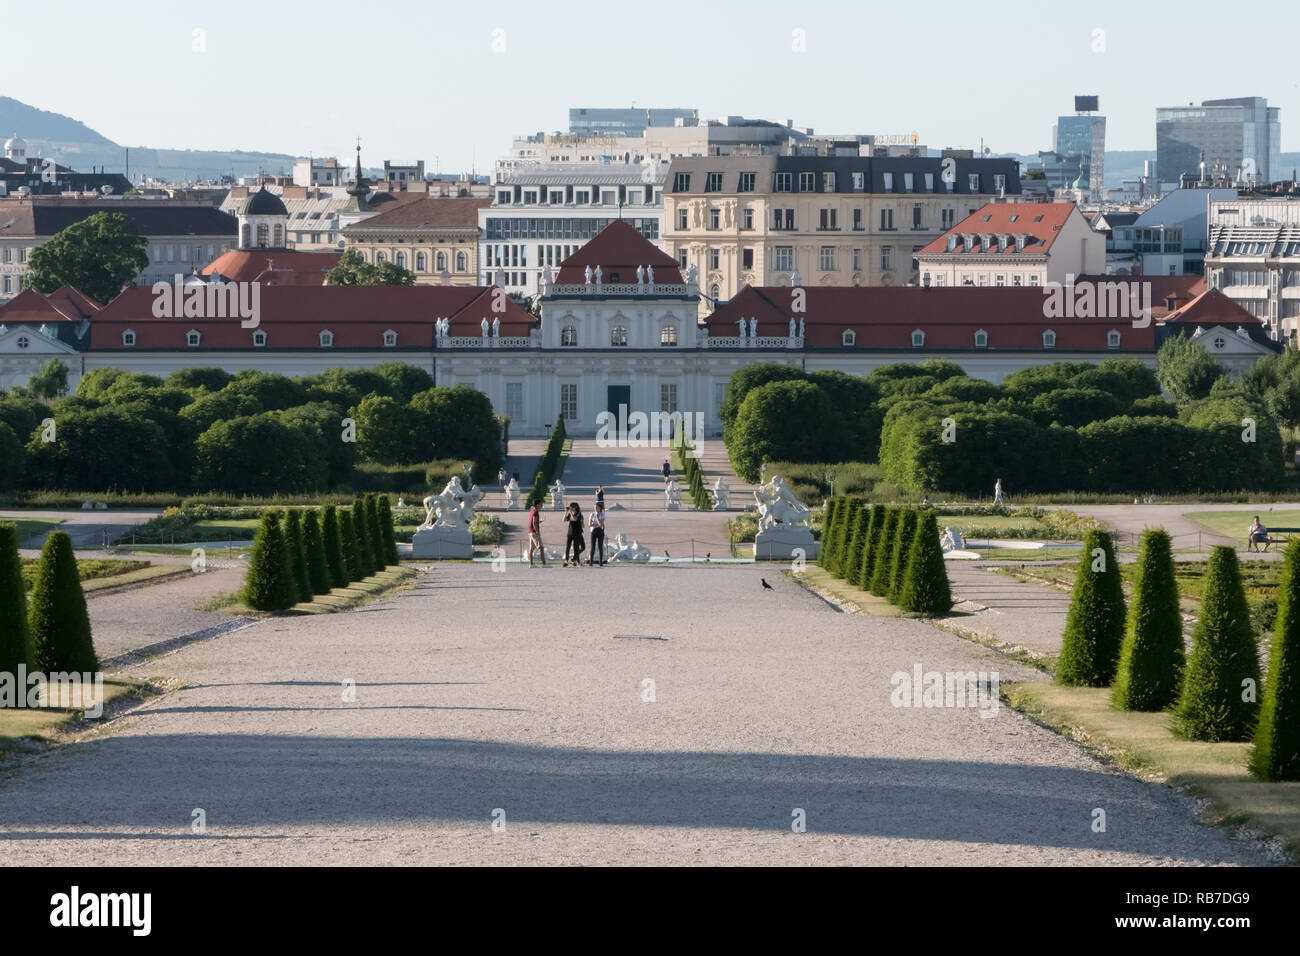 Wien, Österreich - 18. Juni 2017: Das Untere Belvedere Palast und die Gärten sind am frühen Abend einen Blick im Sommer gezeigt. Stockfoto